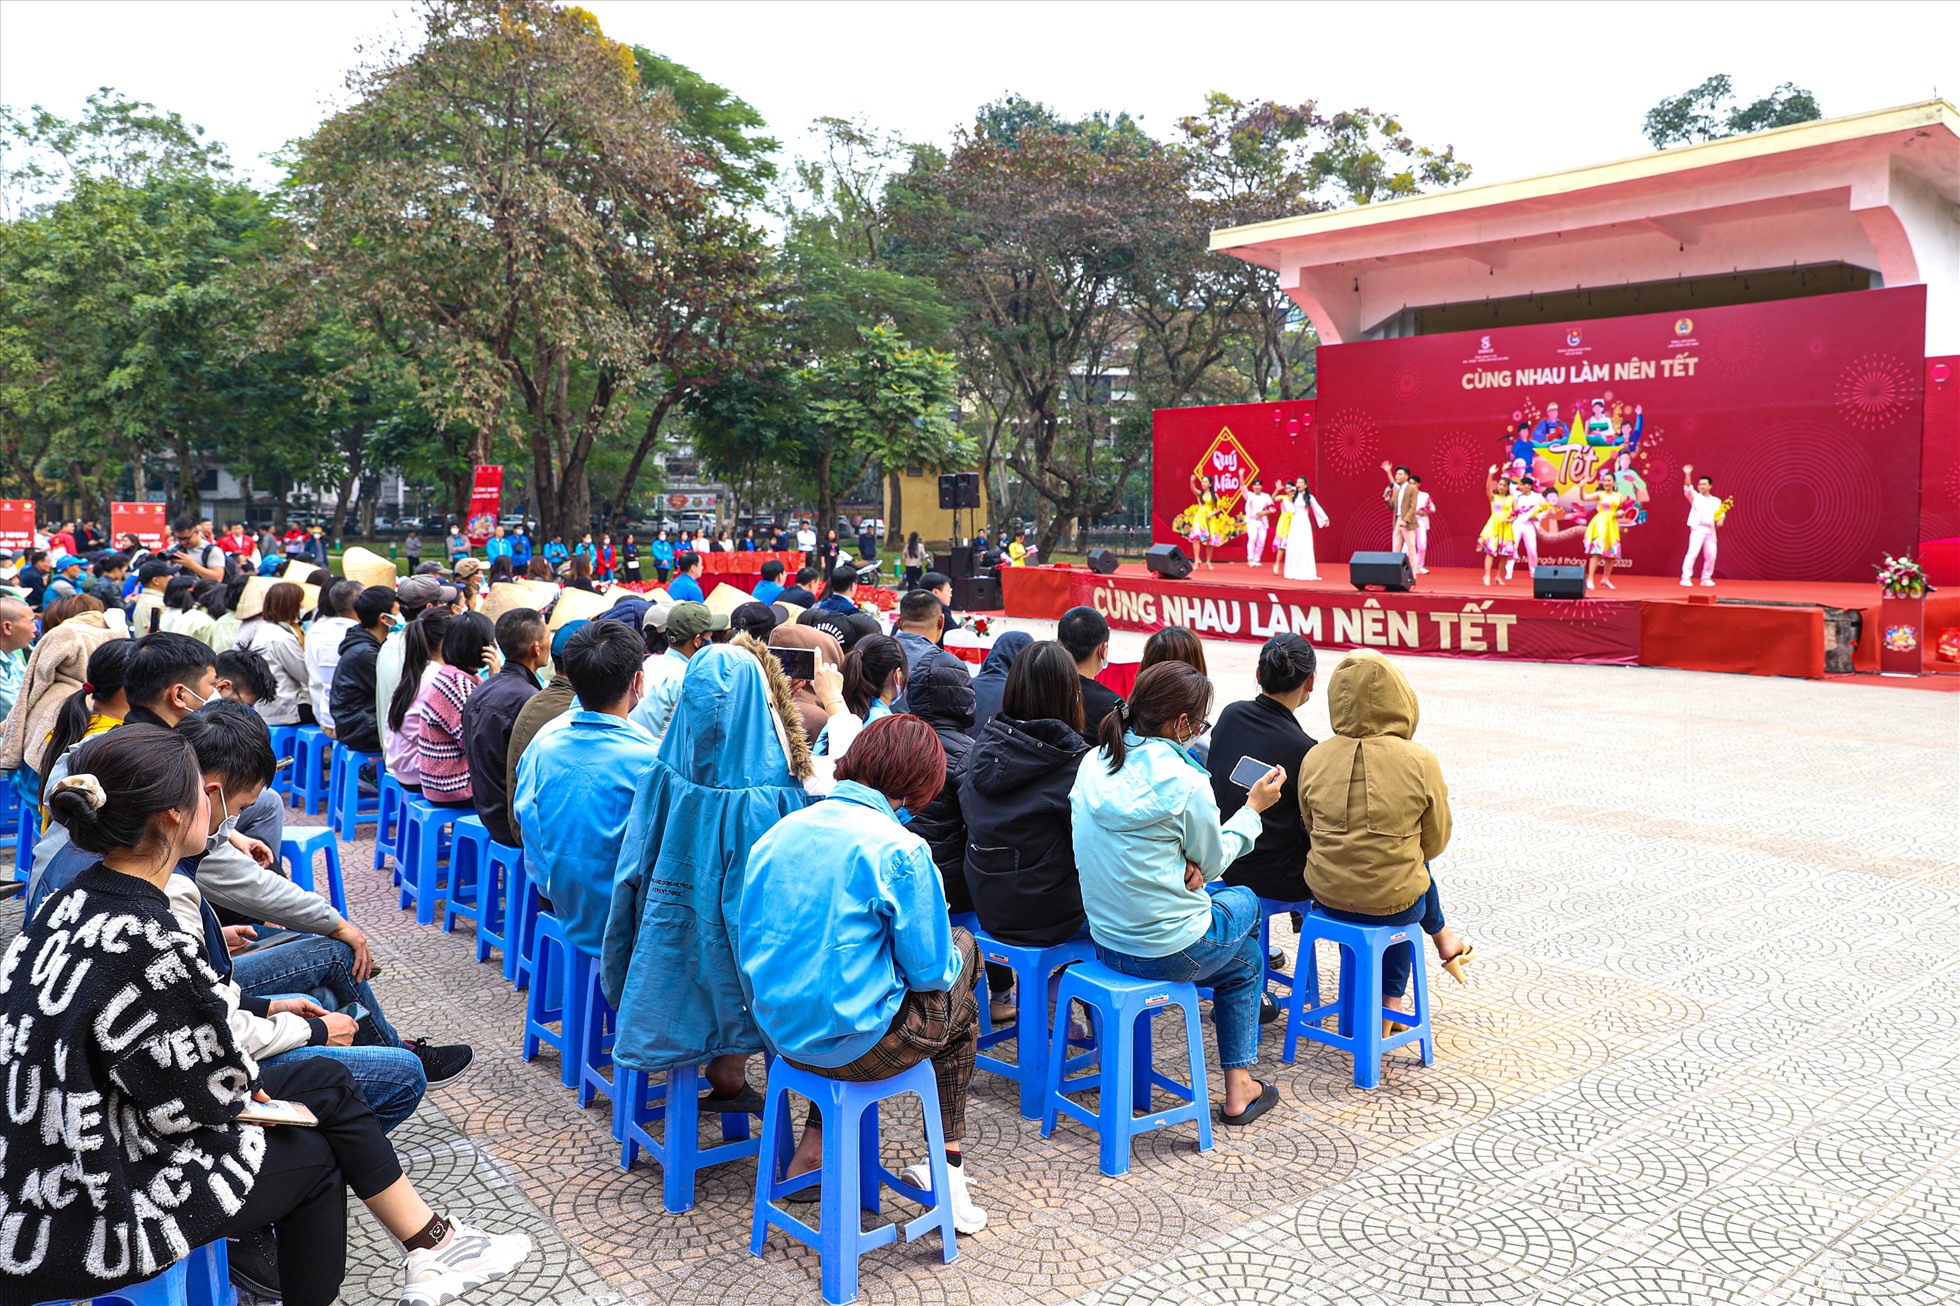 Chiều 8.1, tại Công viên Thống Nhất, diễn ra ngày hội “Cùng nhau làm nên Tết” do Tổng Liên đoàn Lao động Việt Nam, Trung ương Đoàn Thanh niên Cộng sản Hồ Chí Minh phối hợp cùng Tổng Công ty Cổ phần Bia – Rượu – Nước giải khát Sài Gòn (SABECO) và nhãn hàng Bia Saigon tổ chức với sự tham dự của hơn 500 công nhân.